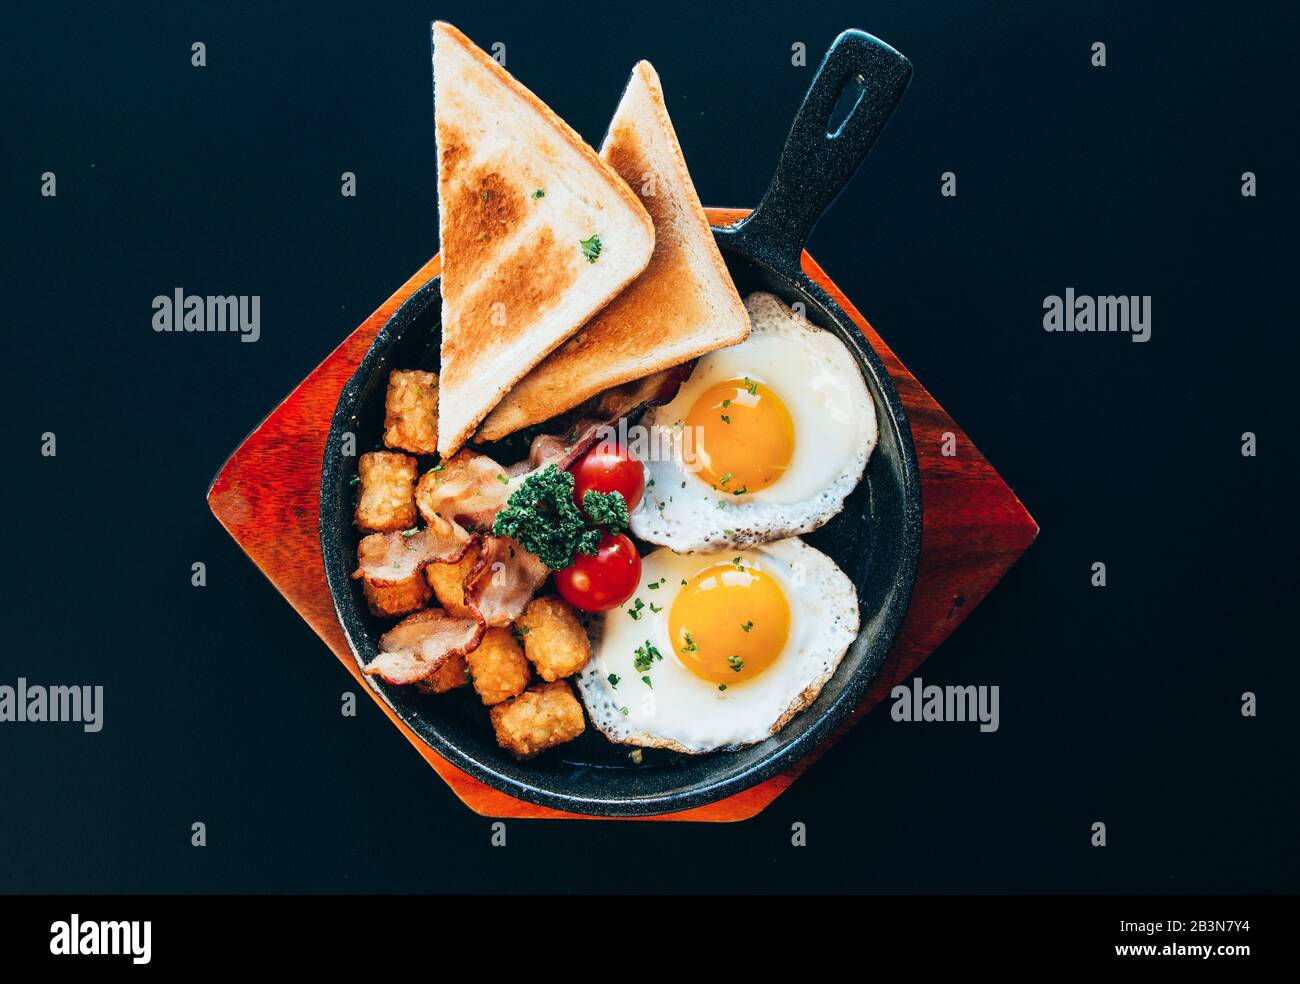 Cuisine de style brunch occidental avec toasts, œufs côté ensoleillé, tomates sur une plaque en bois et fond noir. Banque D'Images